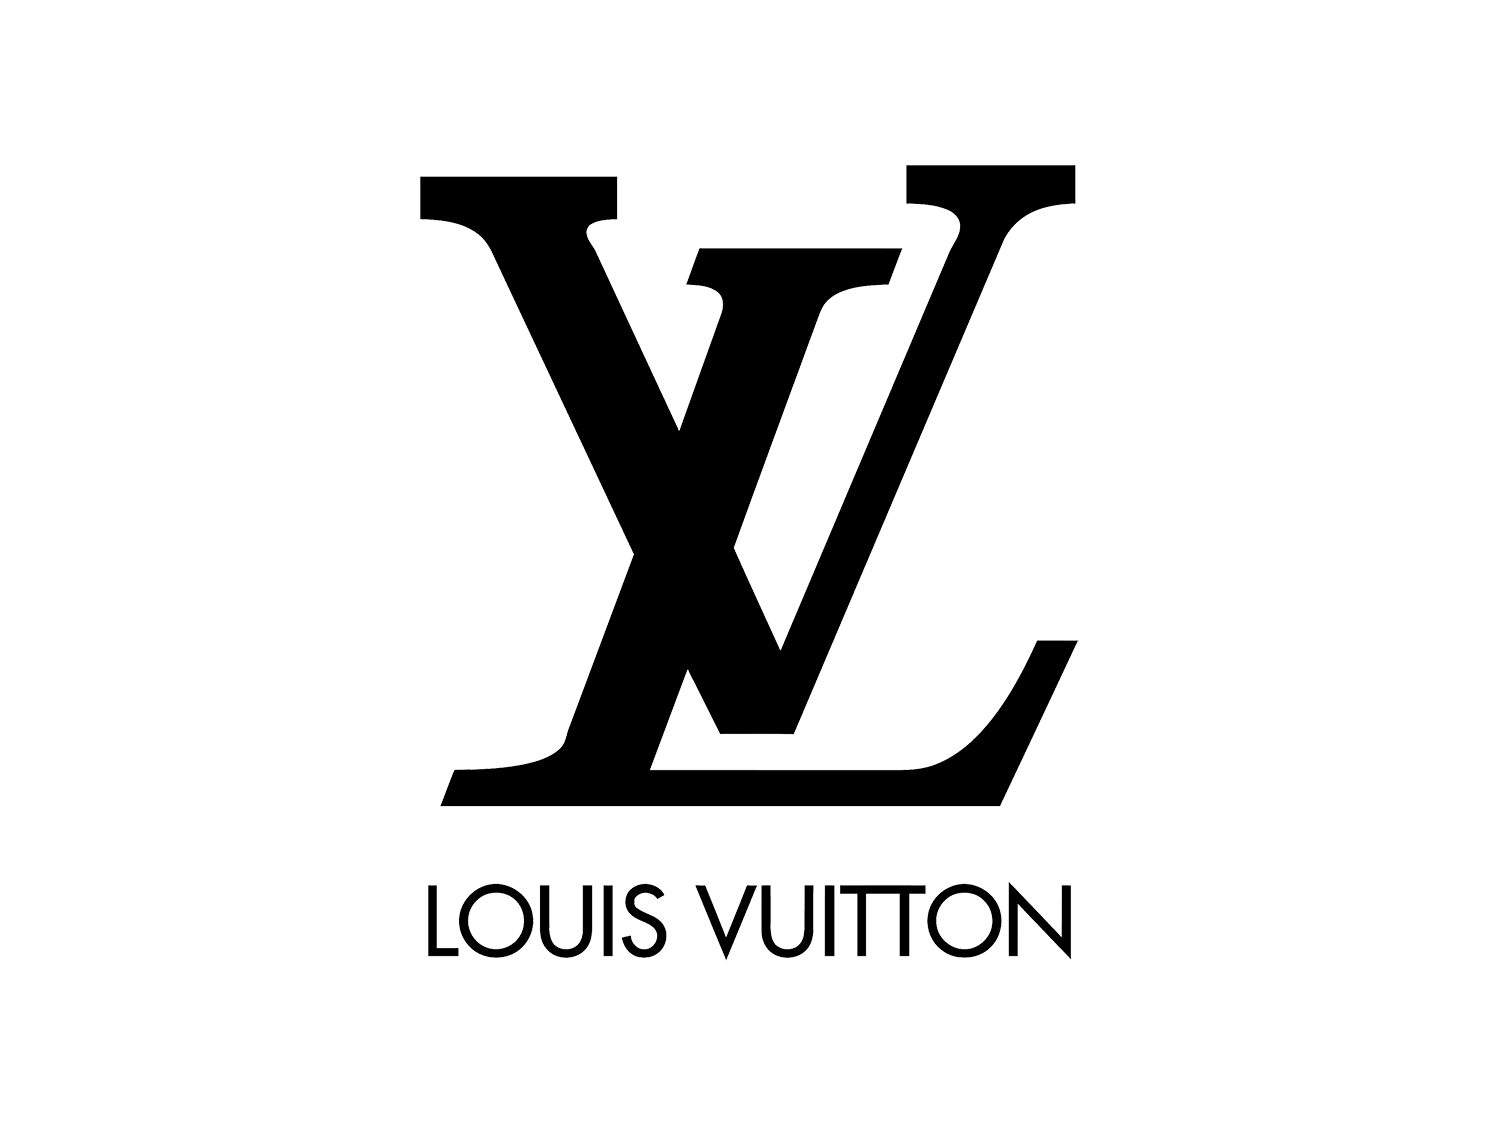 Todo sobre la marca Louis Vuitton - Missy4you